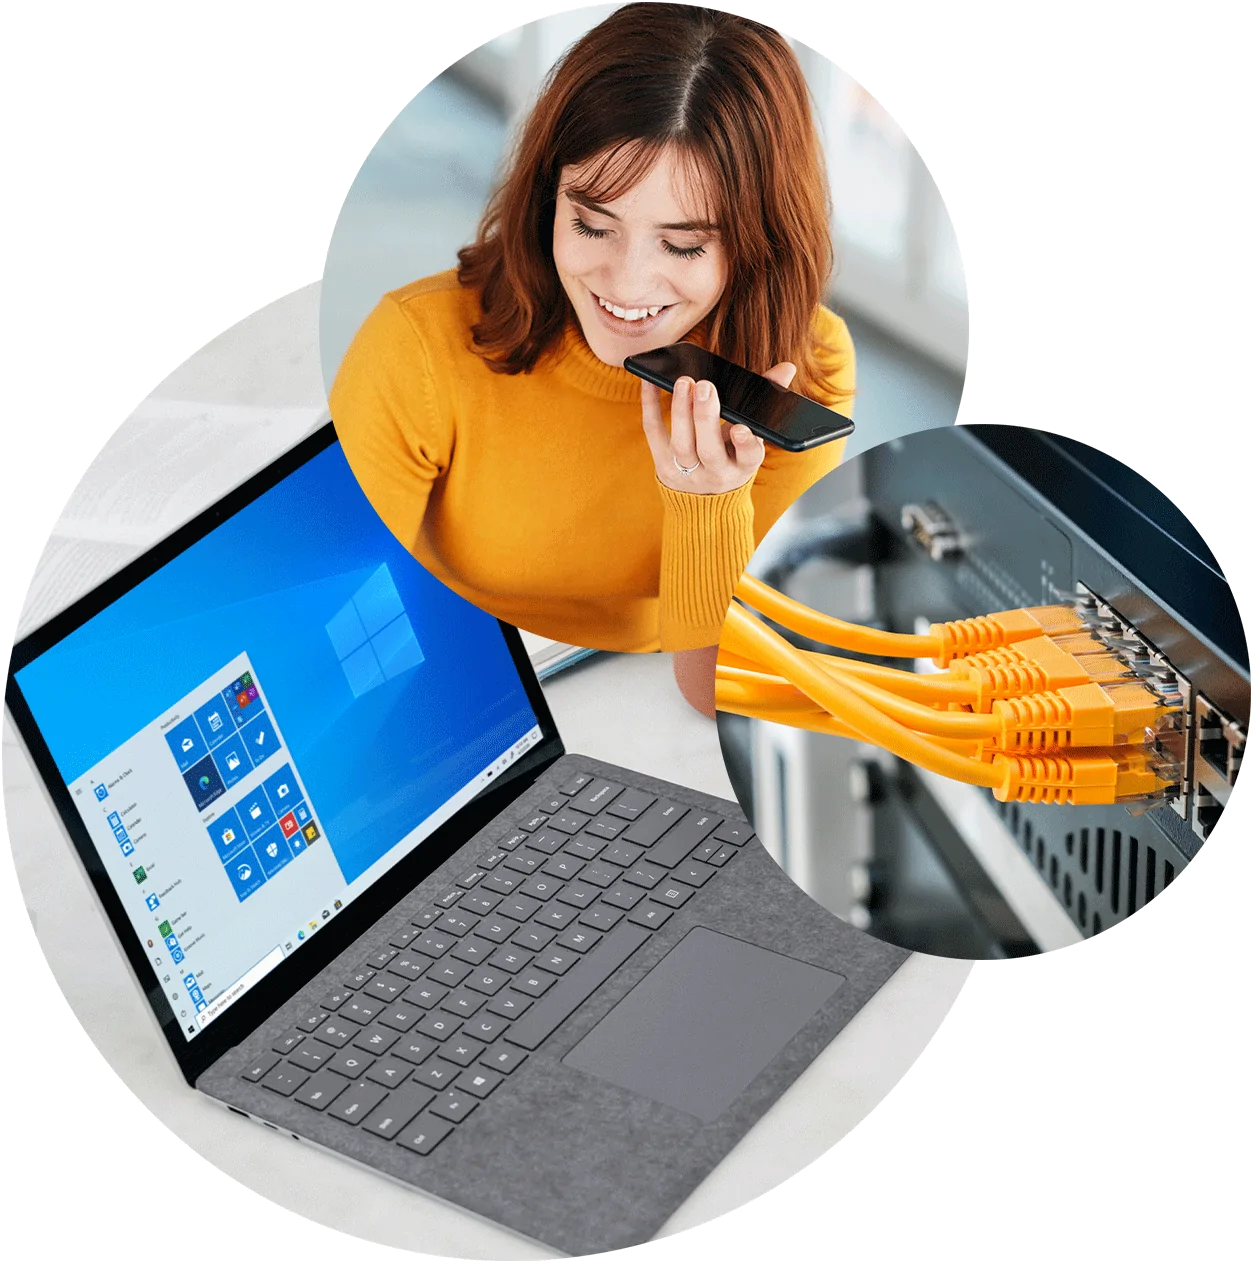 Dreiklang der Microsoft Power BI Leistungsseite bestehend aus drei runden Bildern. Auf dem ersten ist ein Laptop, auf dem zweiten eine Frau im orangen Pullover, die telefoniert und auf dem dritten ein oranges Netzwerkkabel.